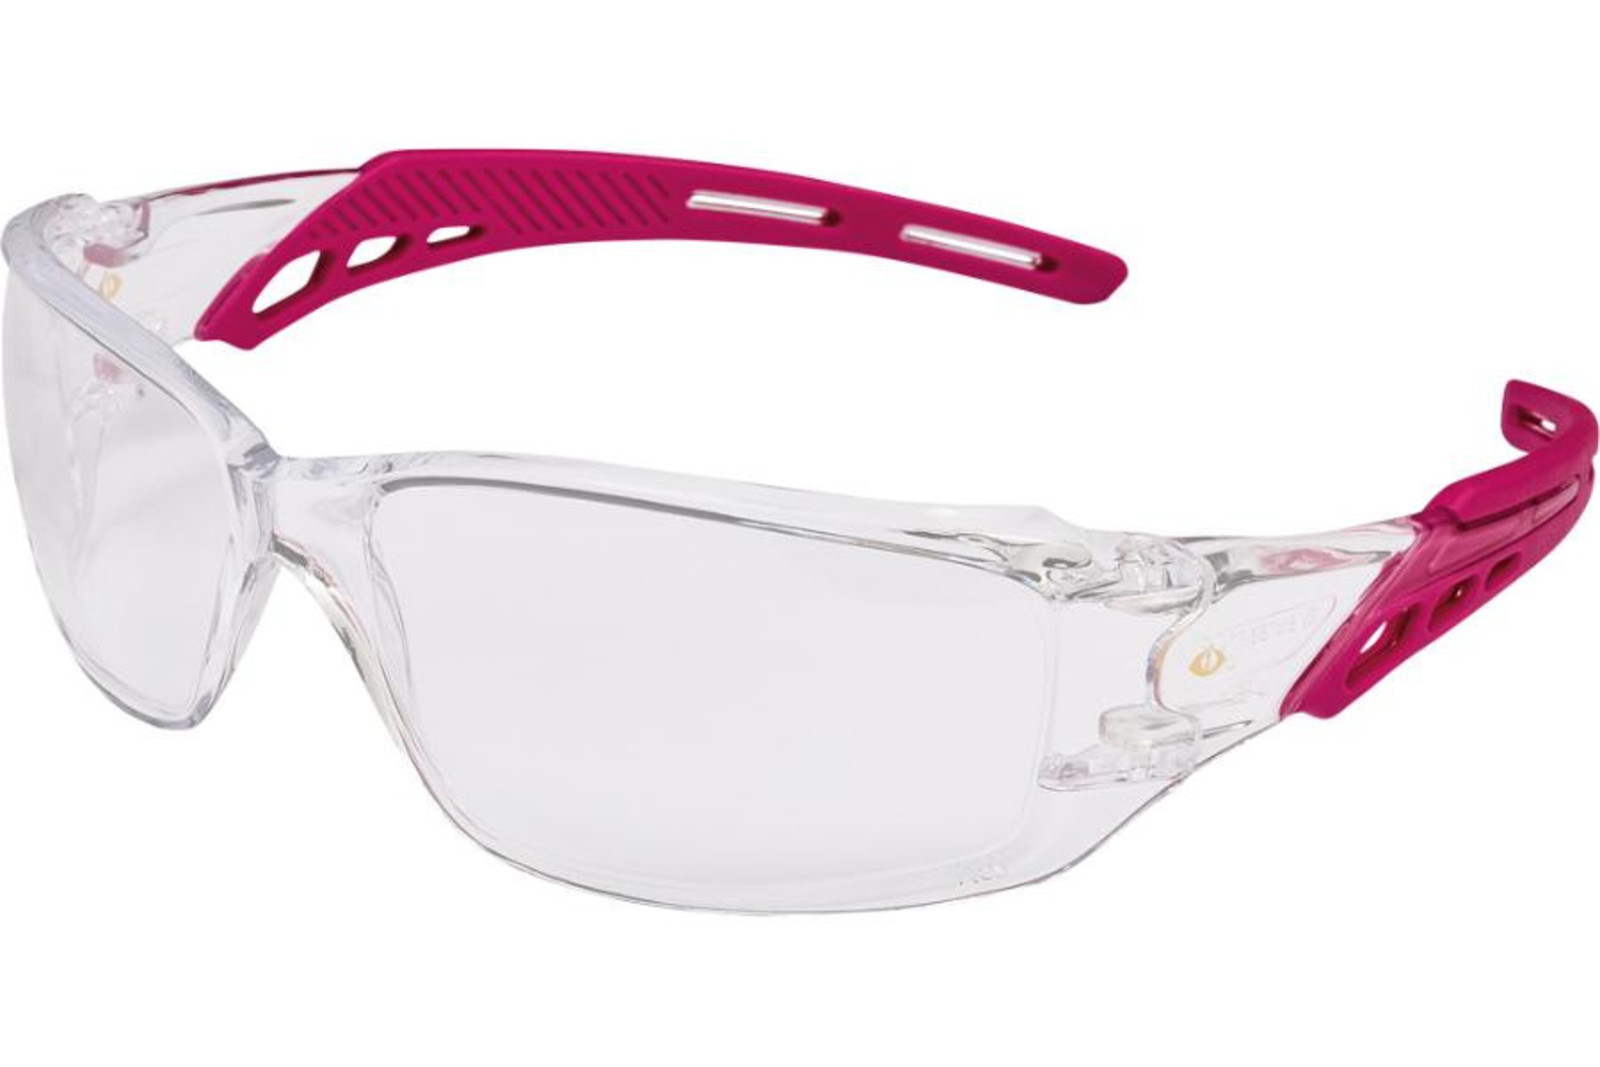 Dámske dielektrické ochranné okuliare Oyre Lady - farba: číra/ružová